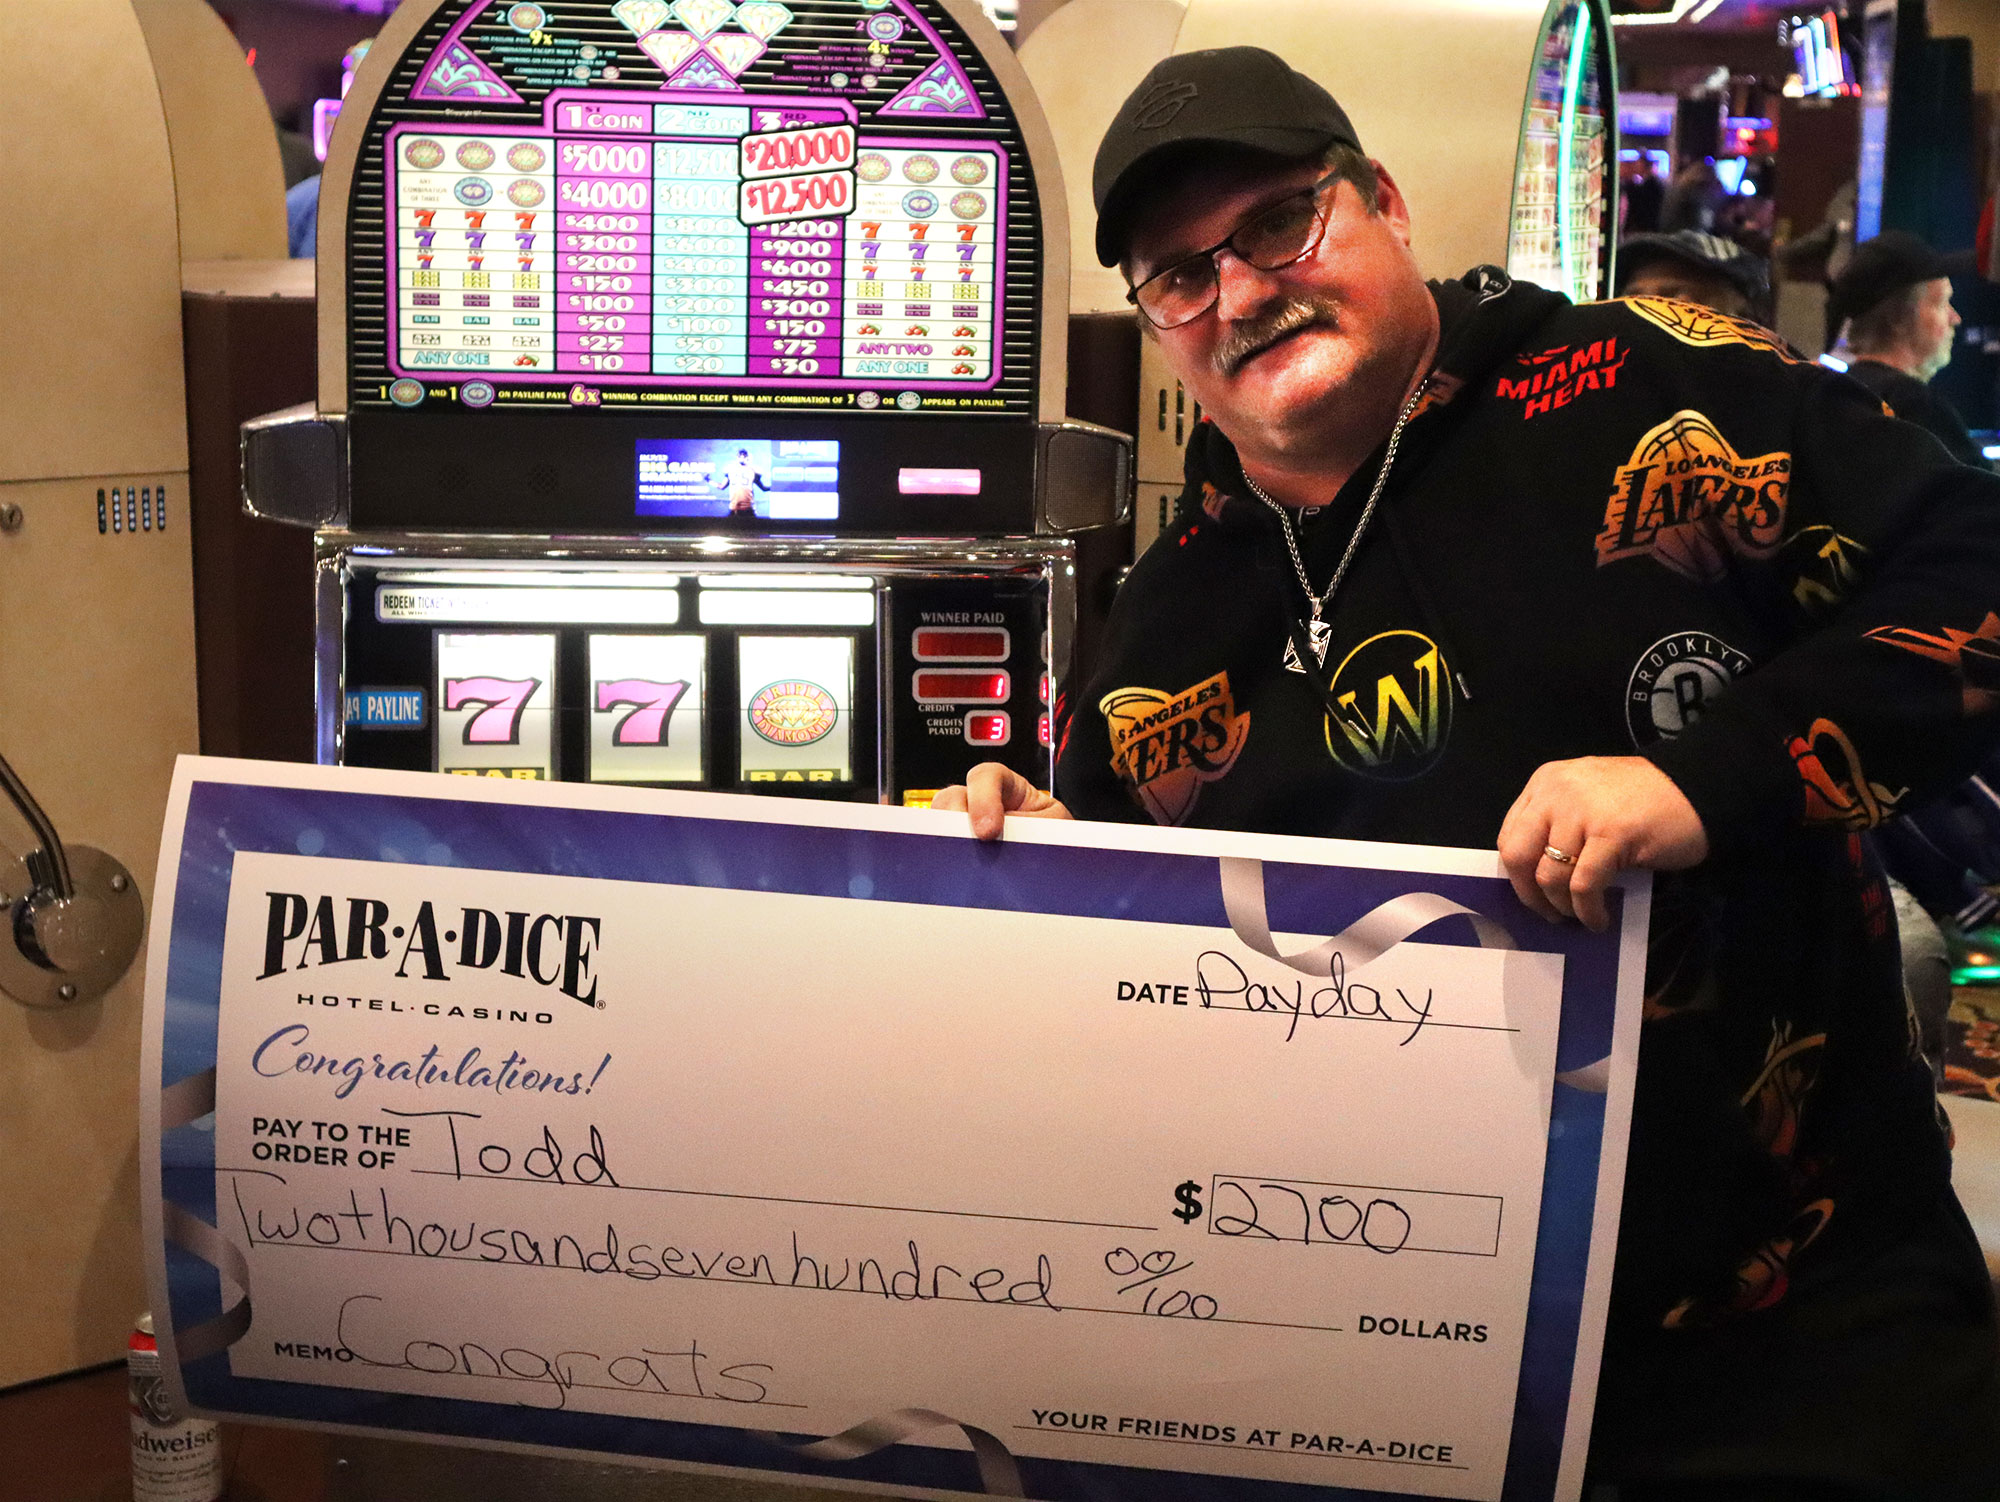 Todd D winner of $2,700